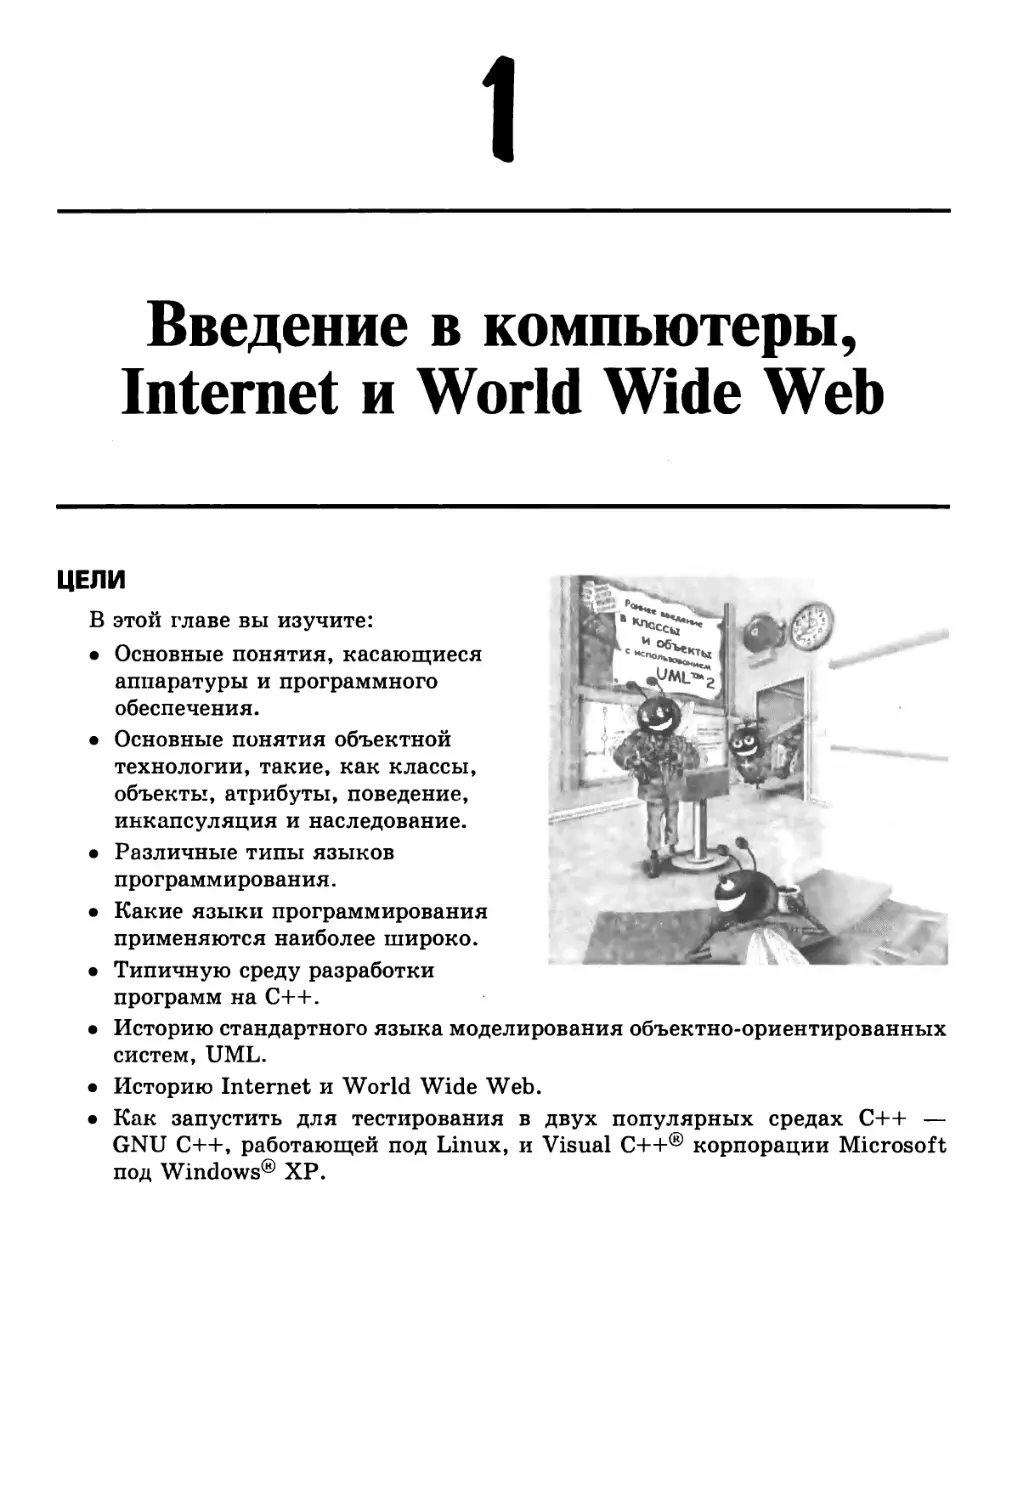 Глава 1. Введение в компьютеры, Internet и World Wide Web